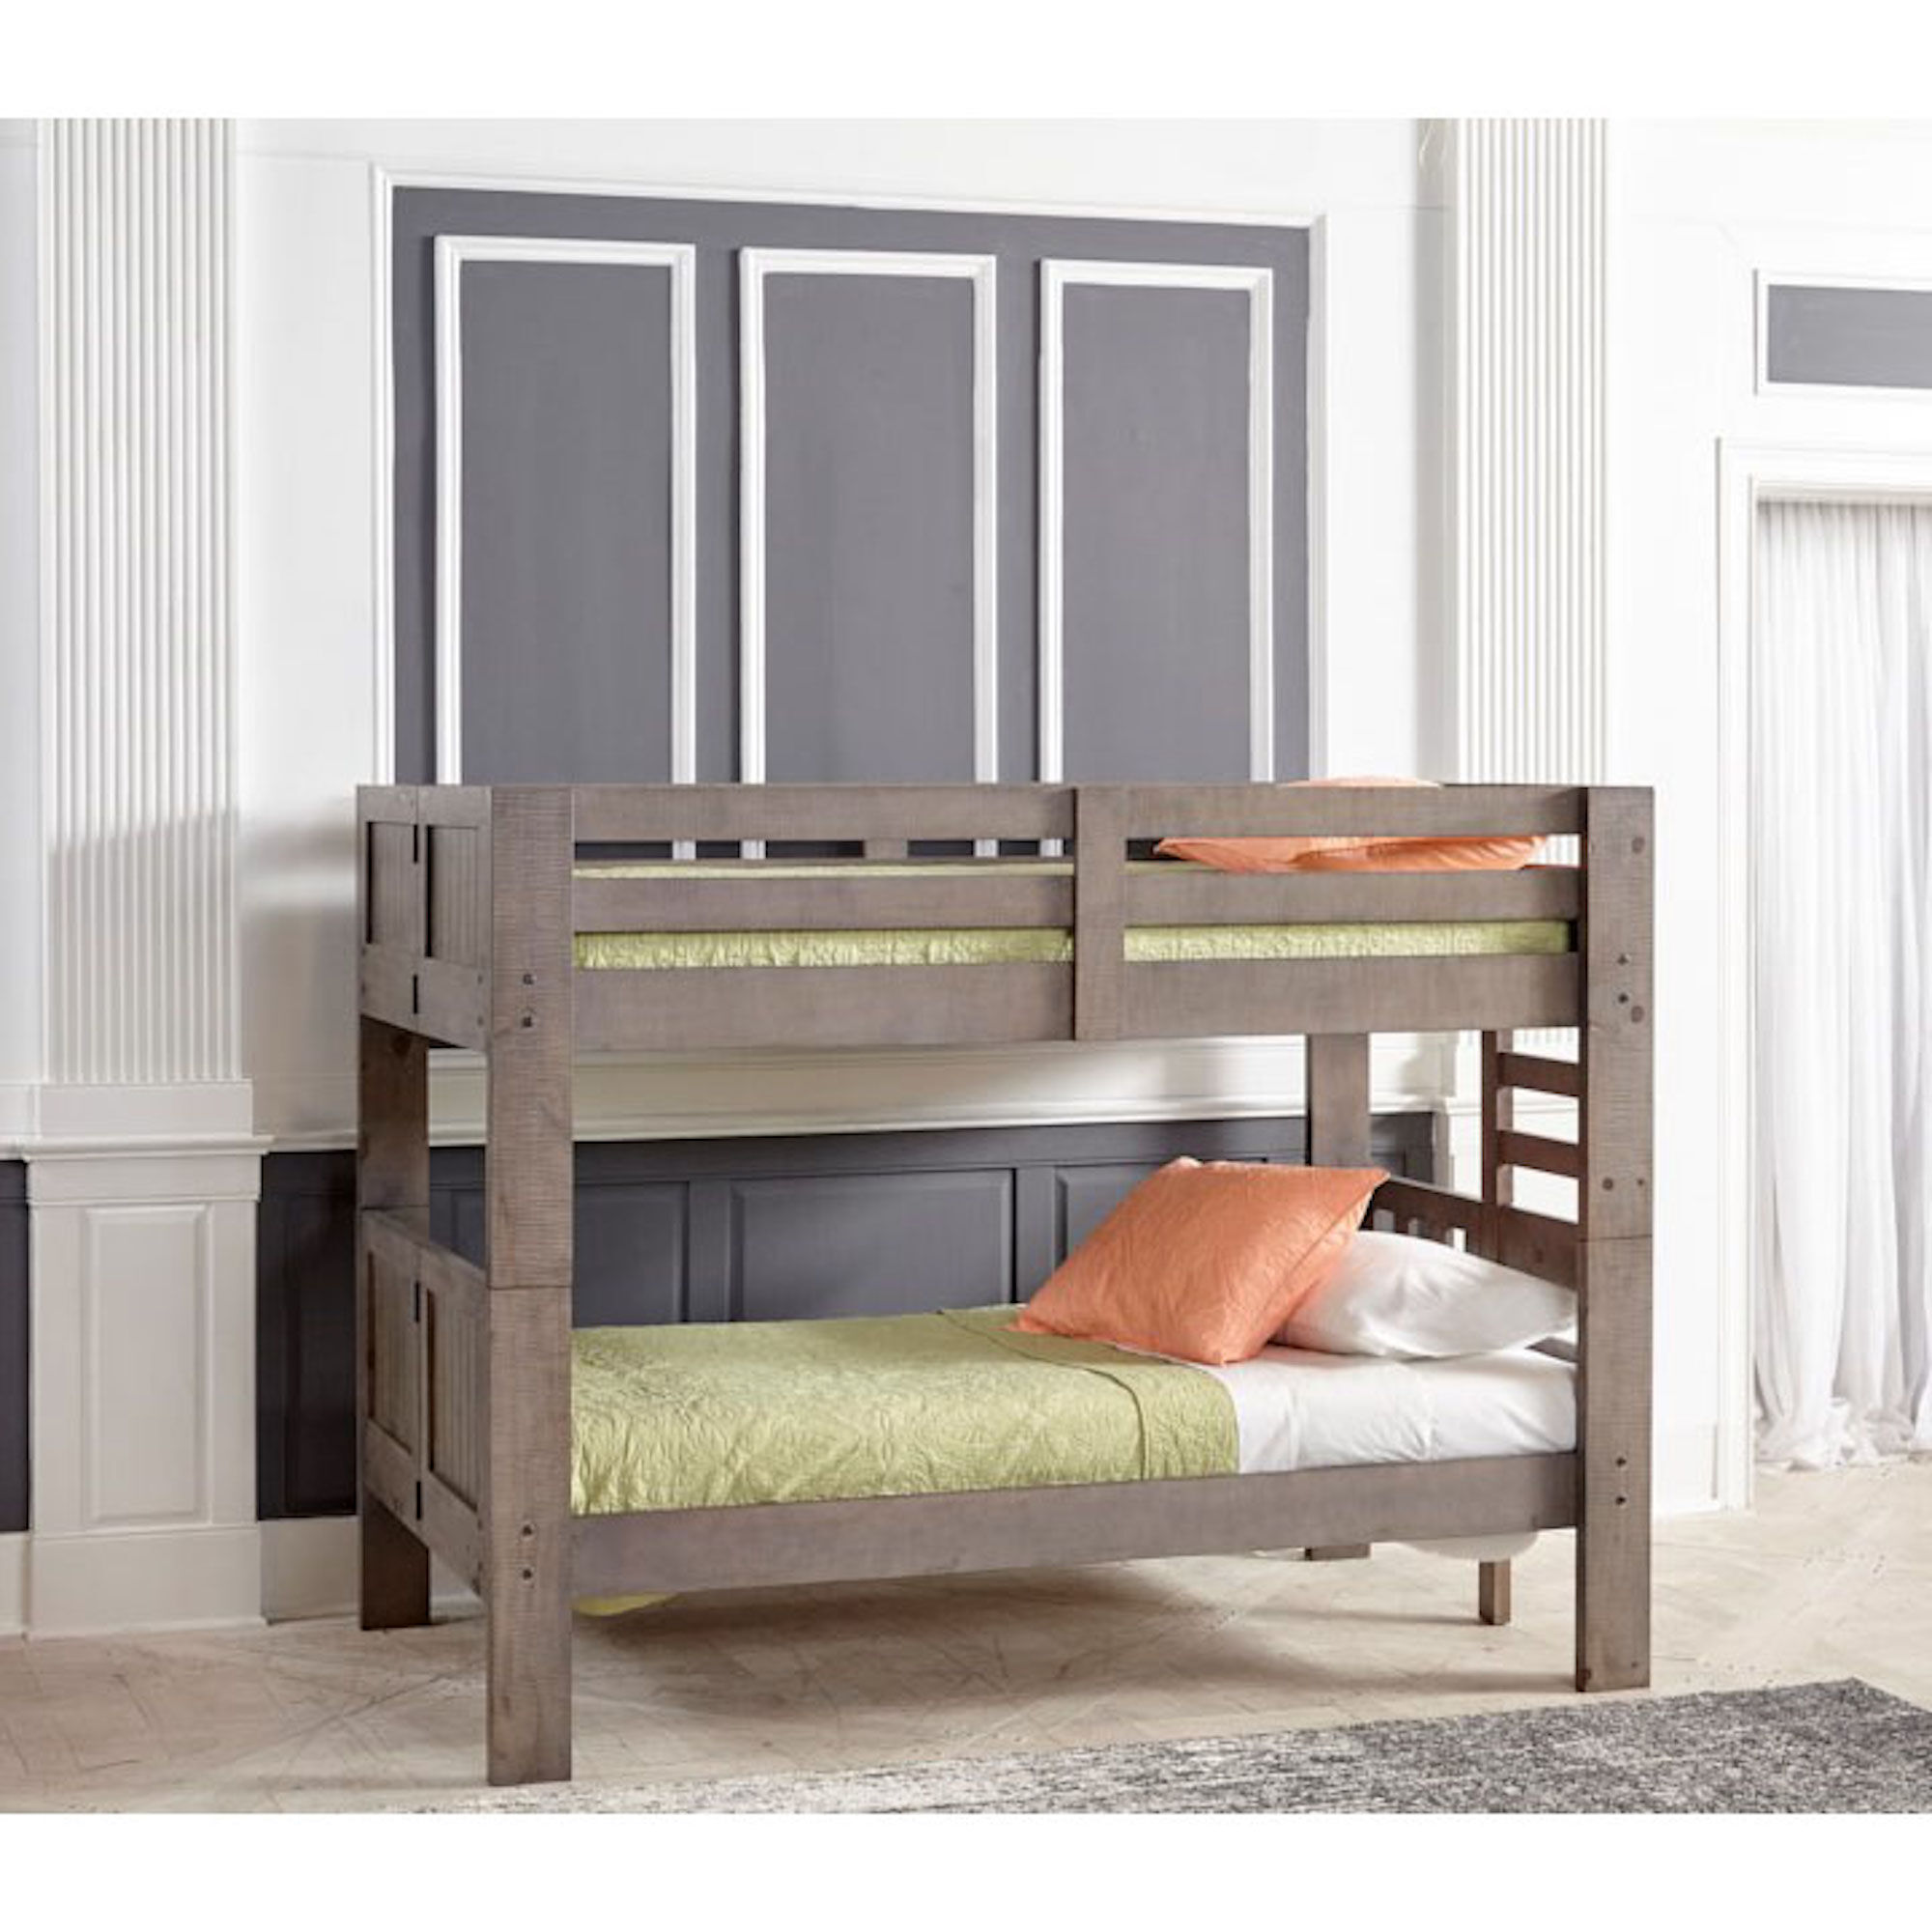 mattresses for bunk beds cheap